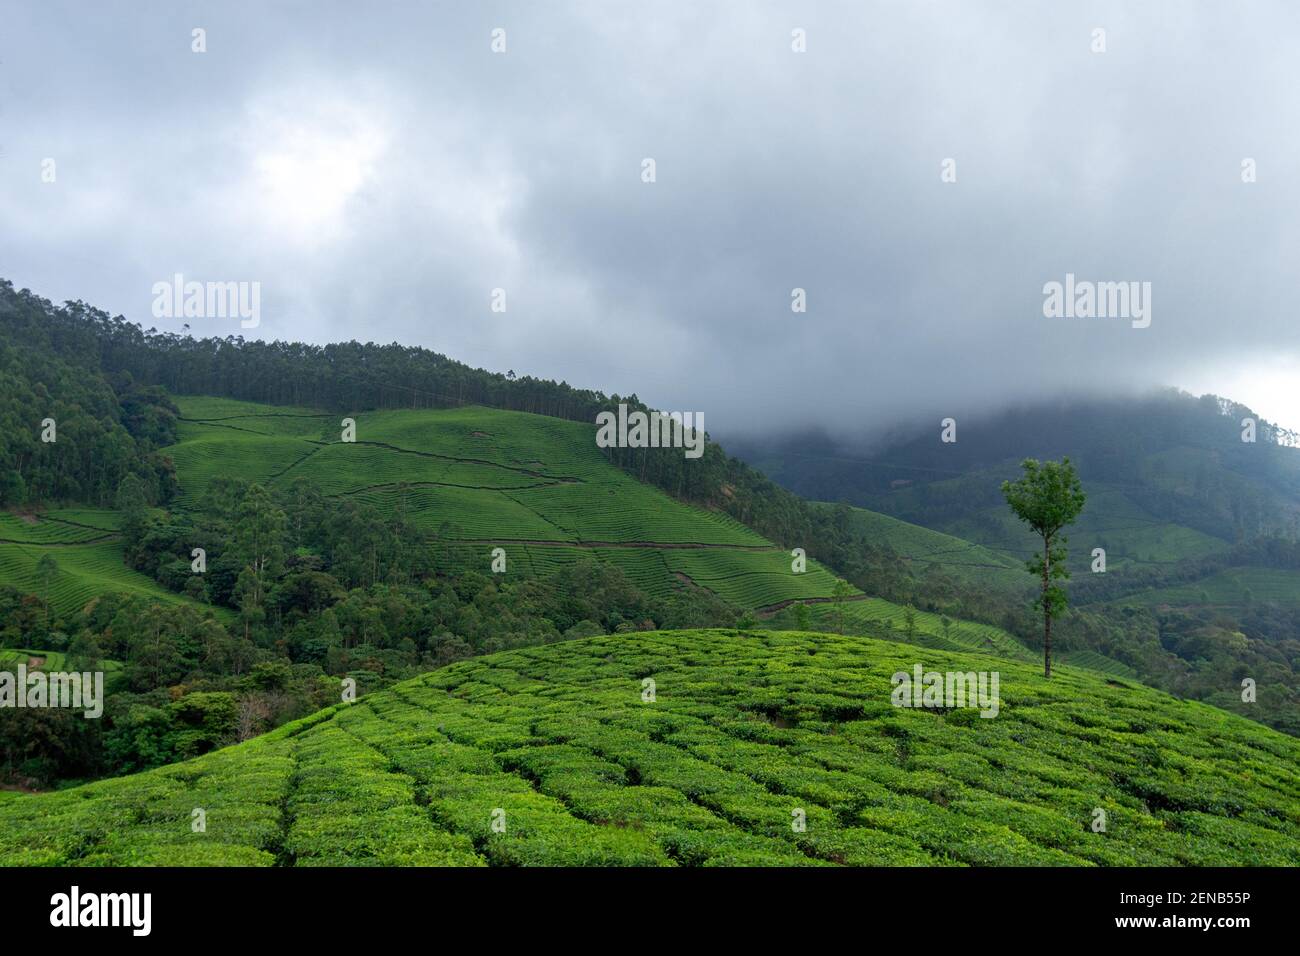 Belle vue sur les collines de Munnar pendant une journée brumeux situé dans le district d'Idukki dans le sud-ouest de l'état indien de Kerala, inde Banque D'Images